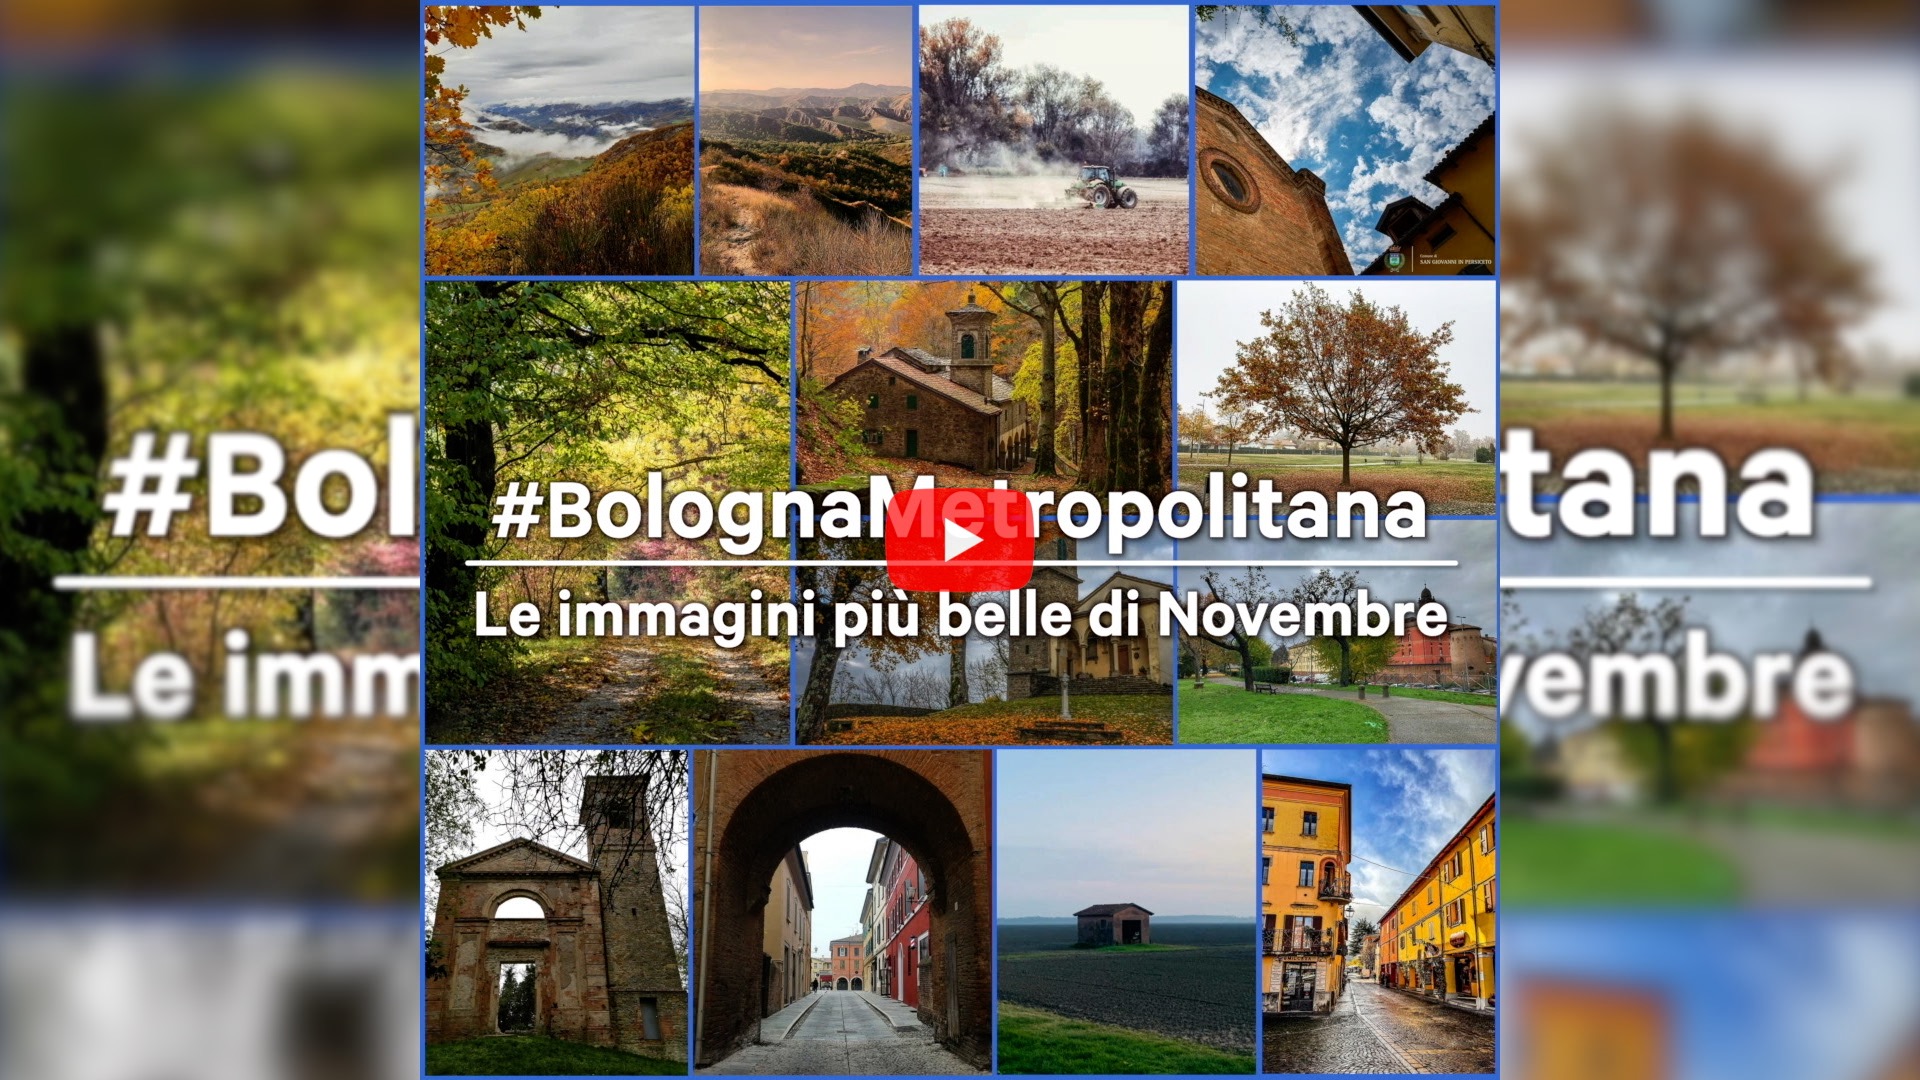 #BolognaMetropolitana - Le immagini più belle di novembre 2021